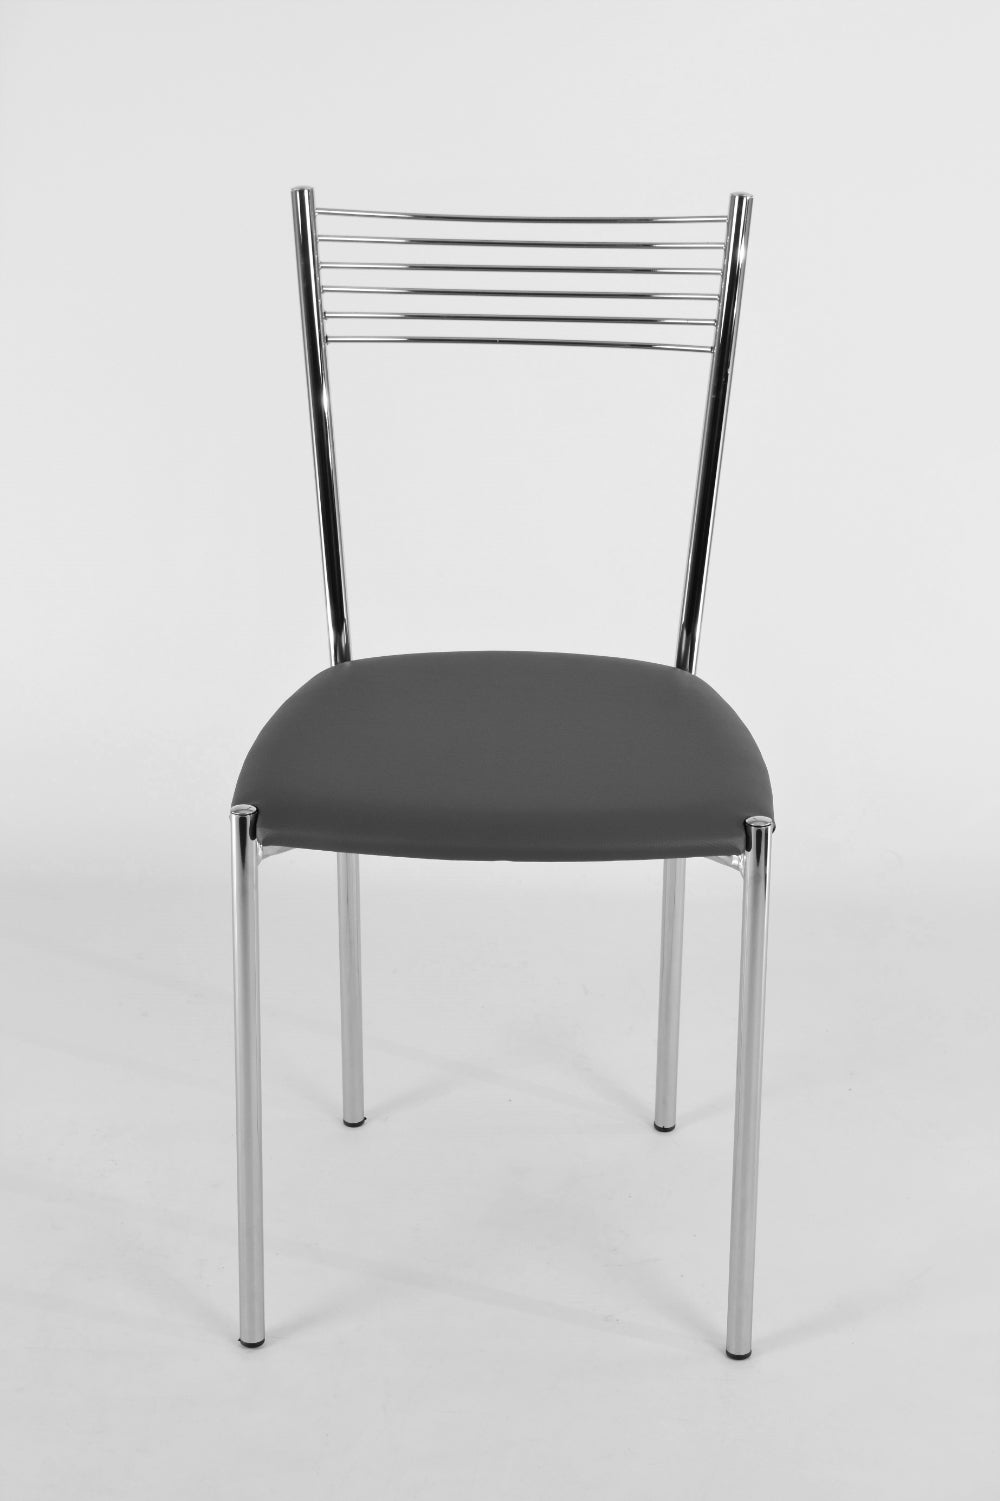 Tommychairs - Set 4 sillas de Cocina, Comedor, Bar y Restaurante Elegance, estructura en acero cromado y asiento tapizado en polipiel gris oscuro